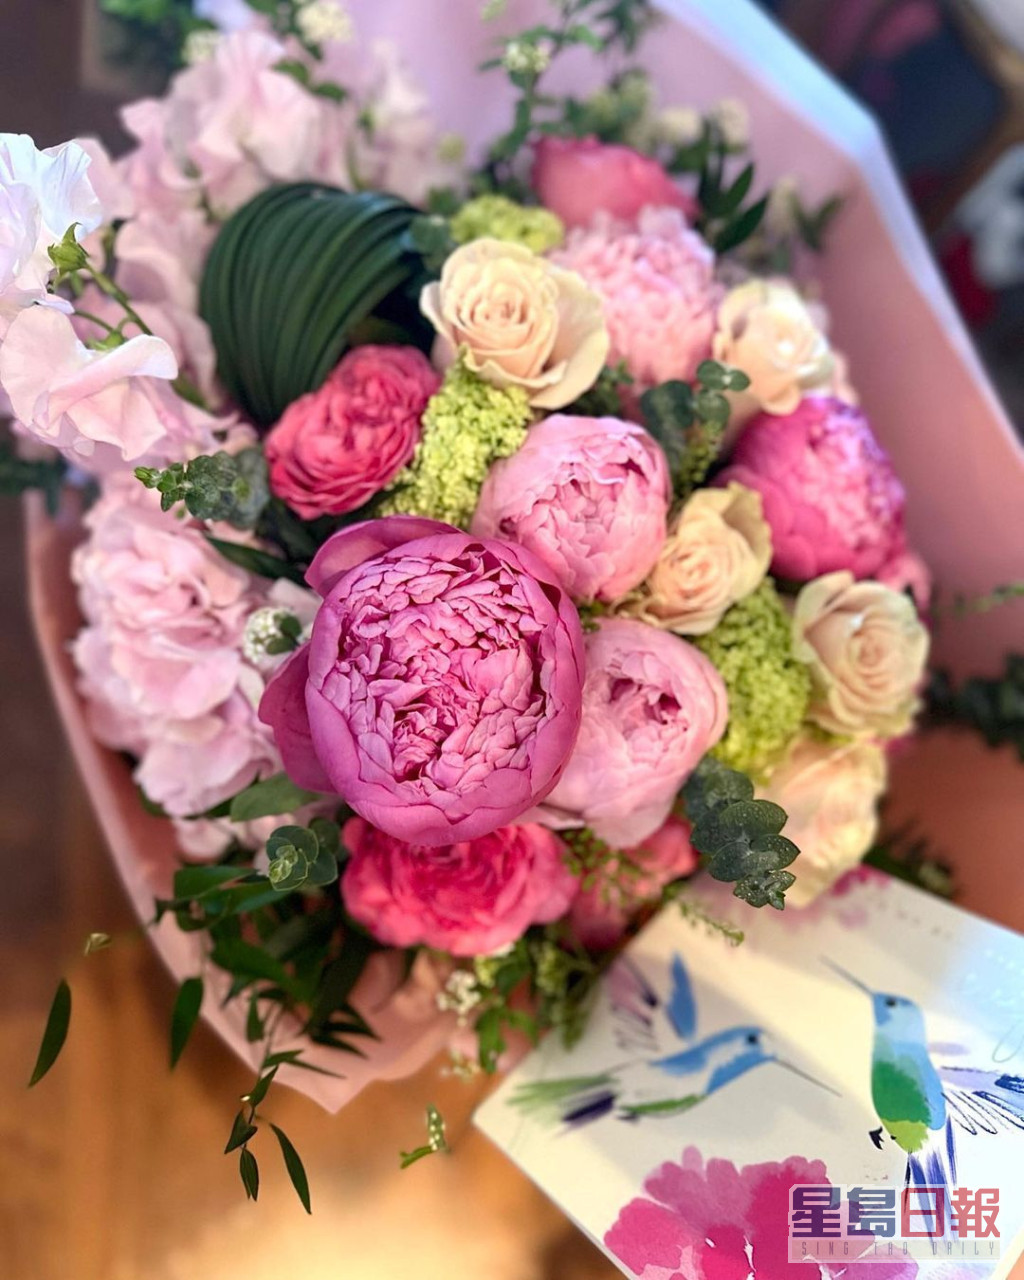 黎姿于结婚14周年纪念日在IG分享美丽花束照。  ​